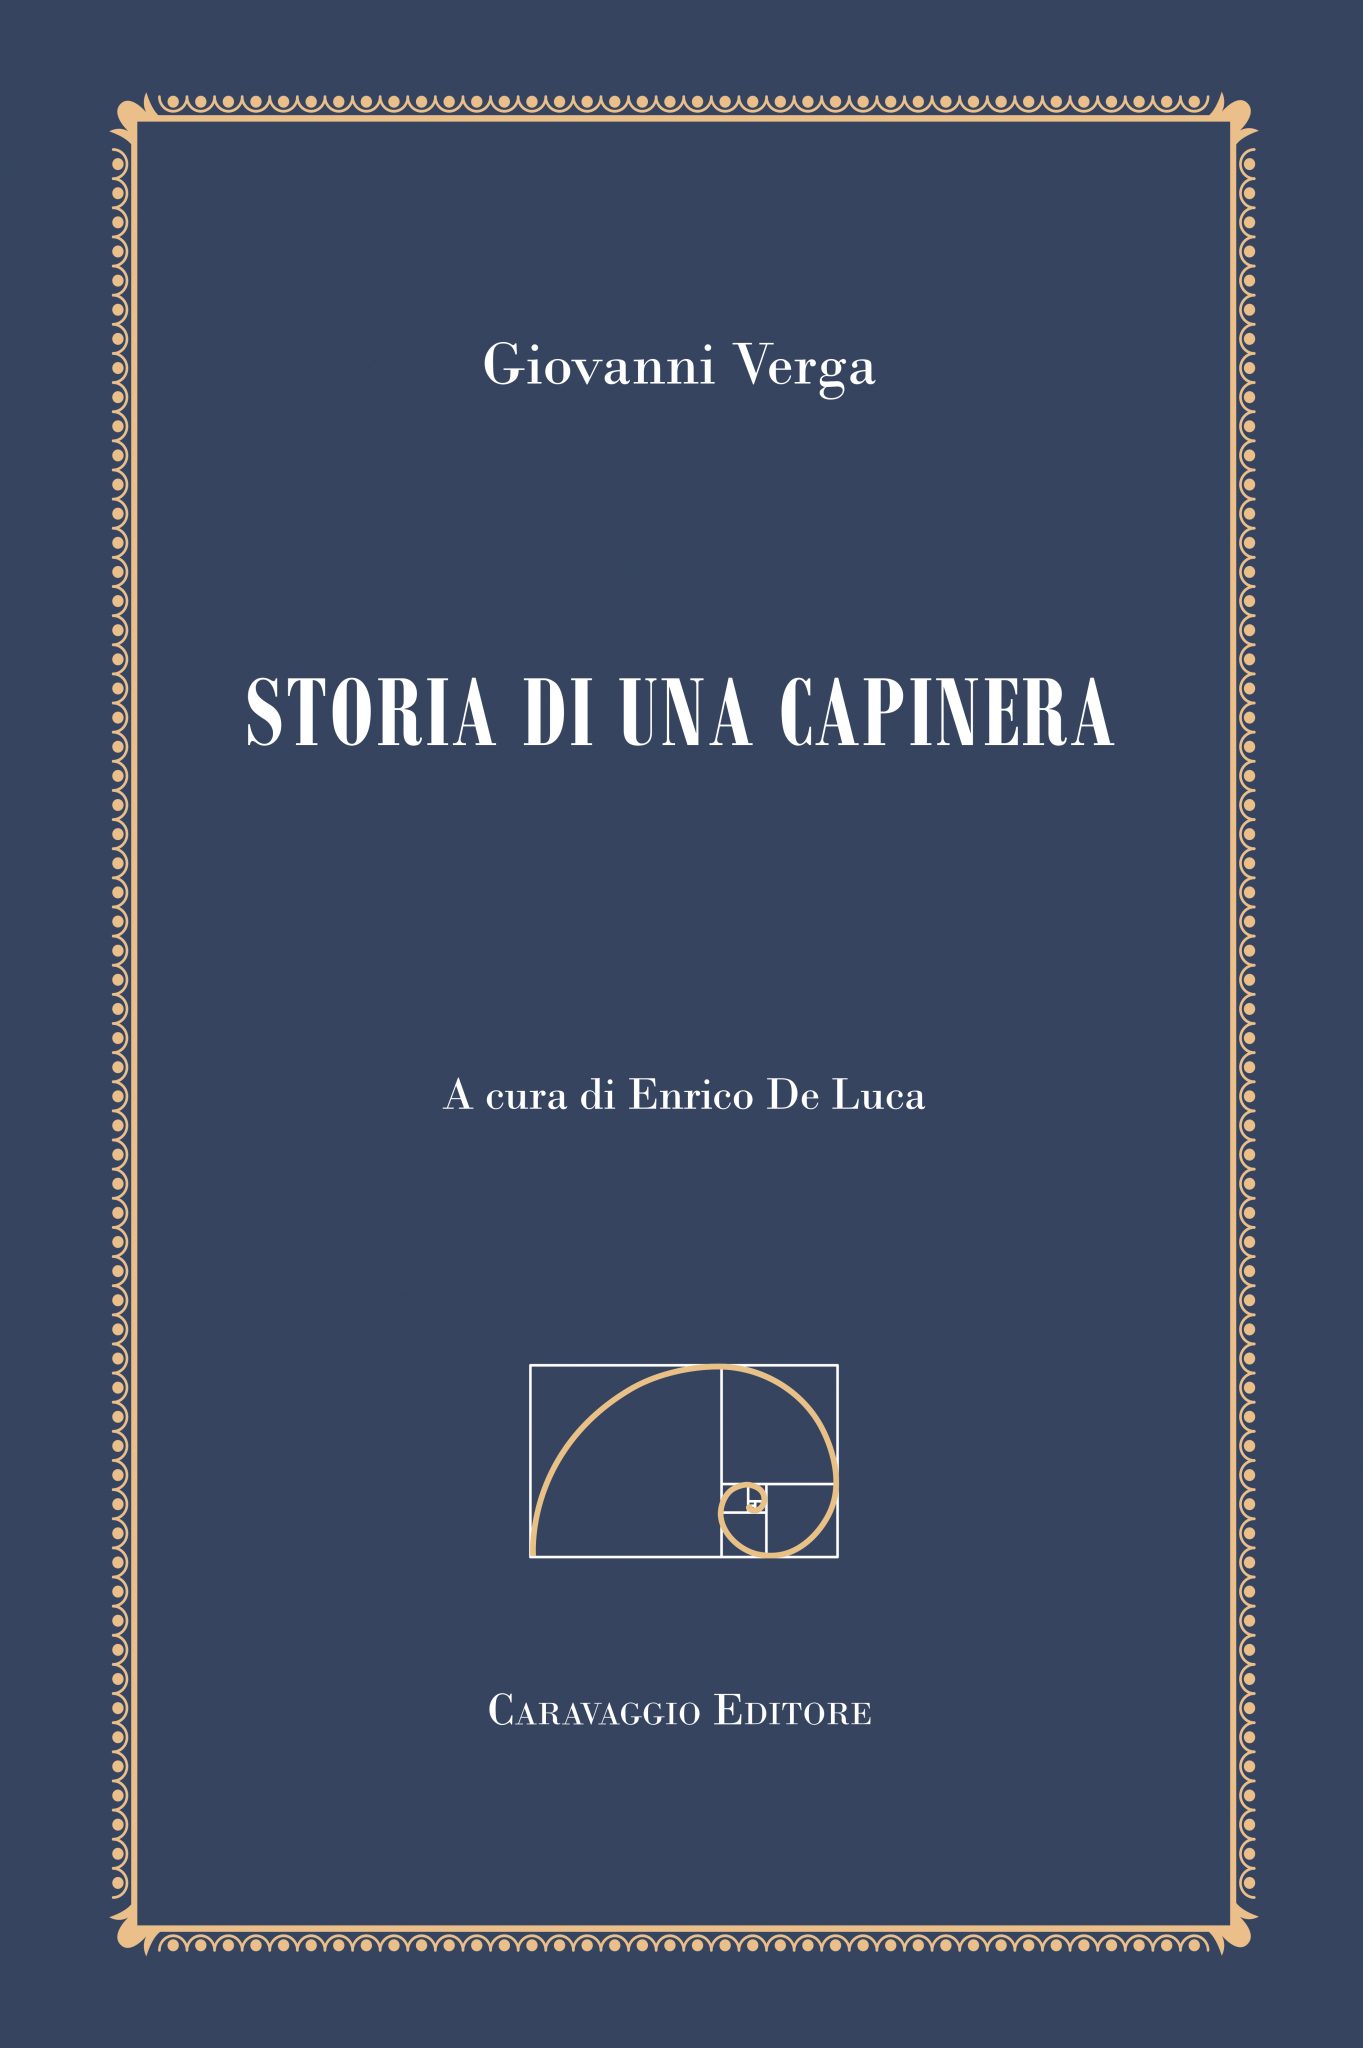 Storia di una capinera di Giovanni Verga - Caravaggio Editore